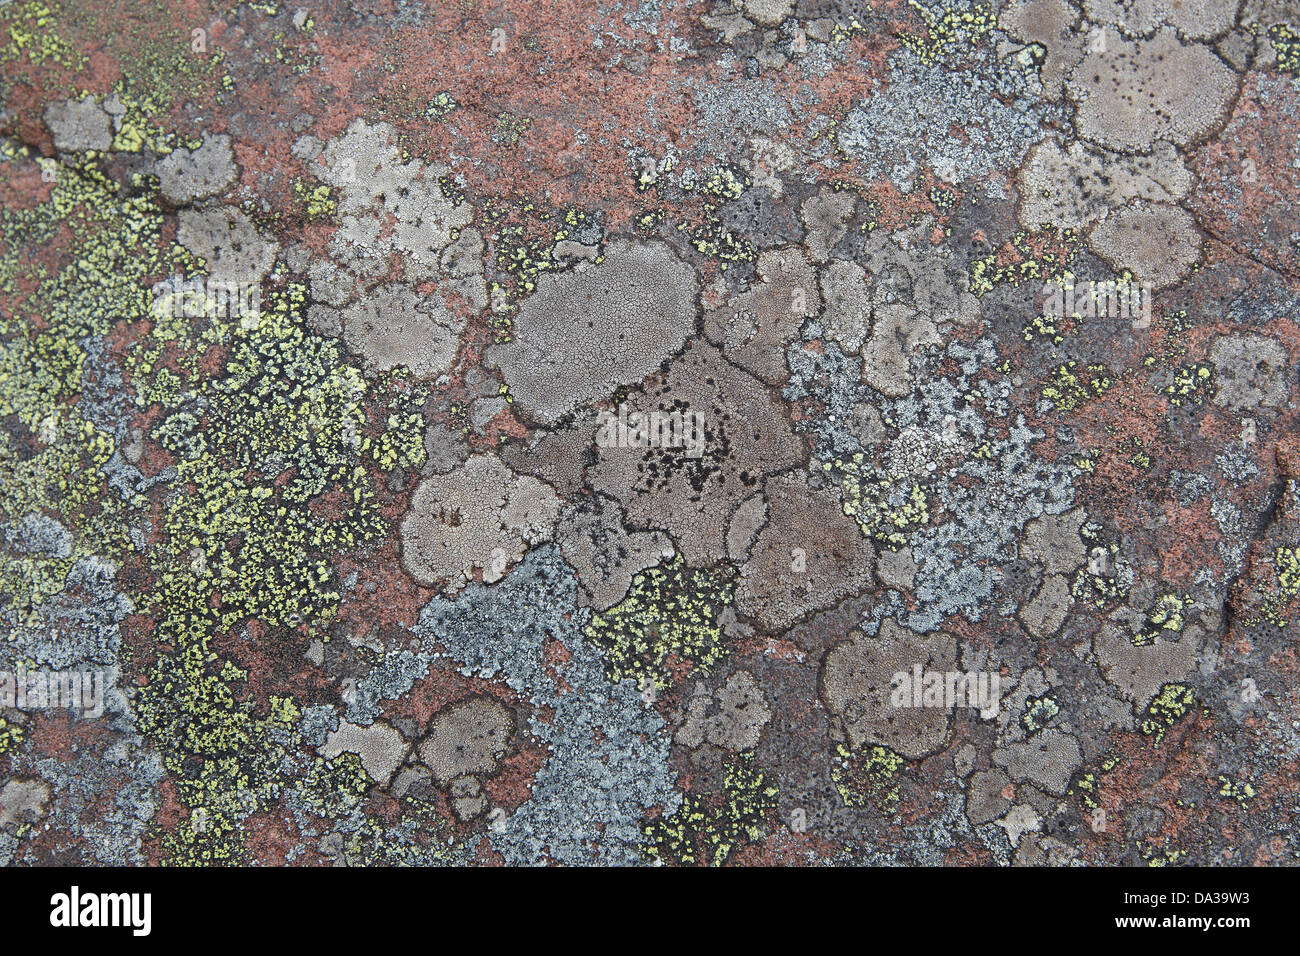 Vari colori di lichen su una roccia sul litorale di Enard Bay, Sutherland, a nord-ovest della Scozia, Regno Unito Foto Stock